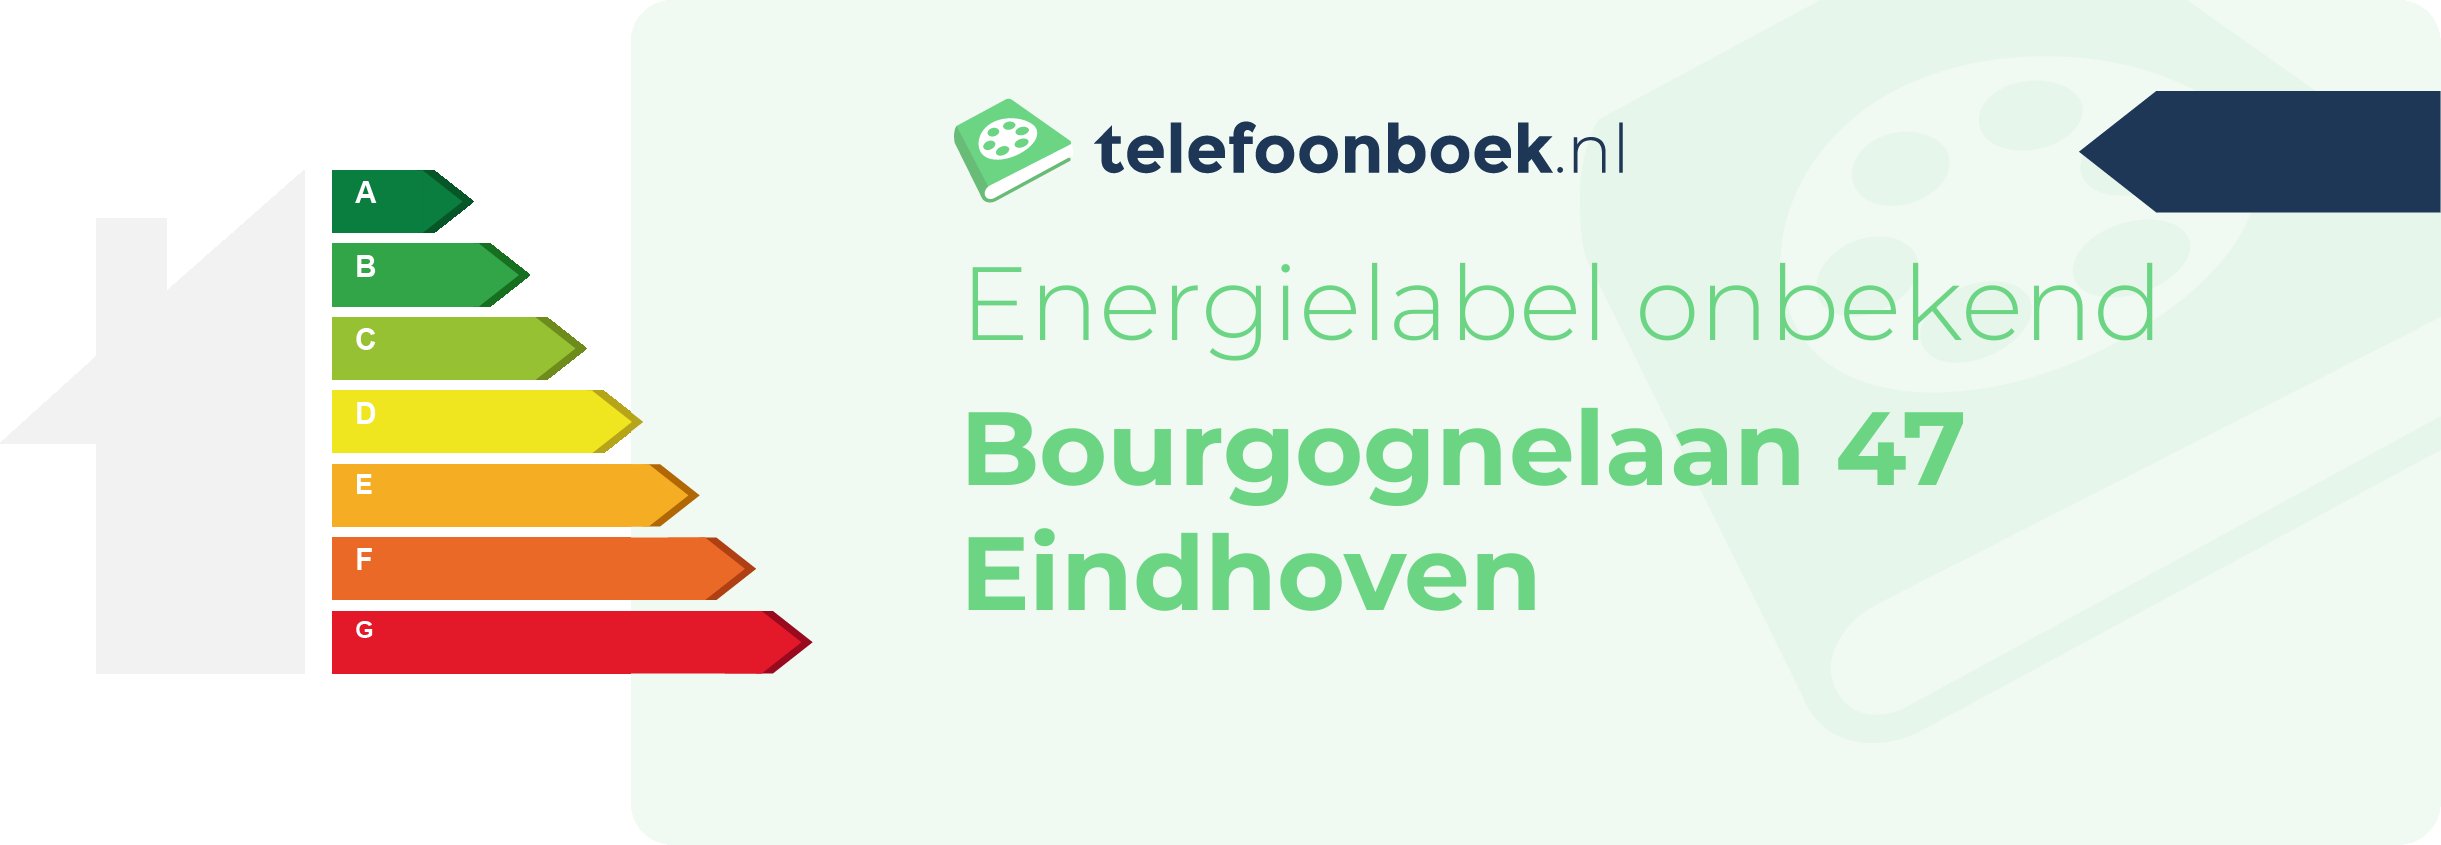 Energielabel Bourgognelaan 47 Eindhoven